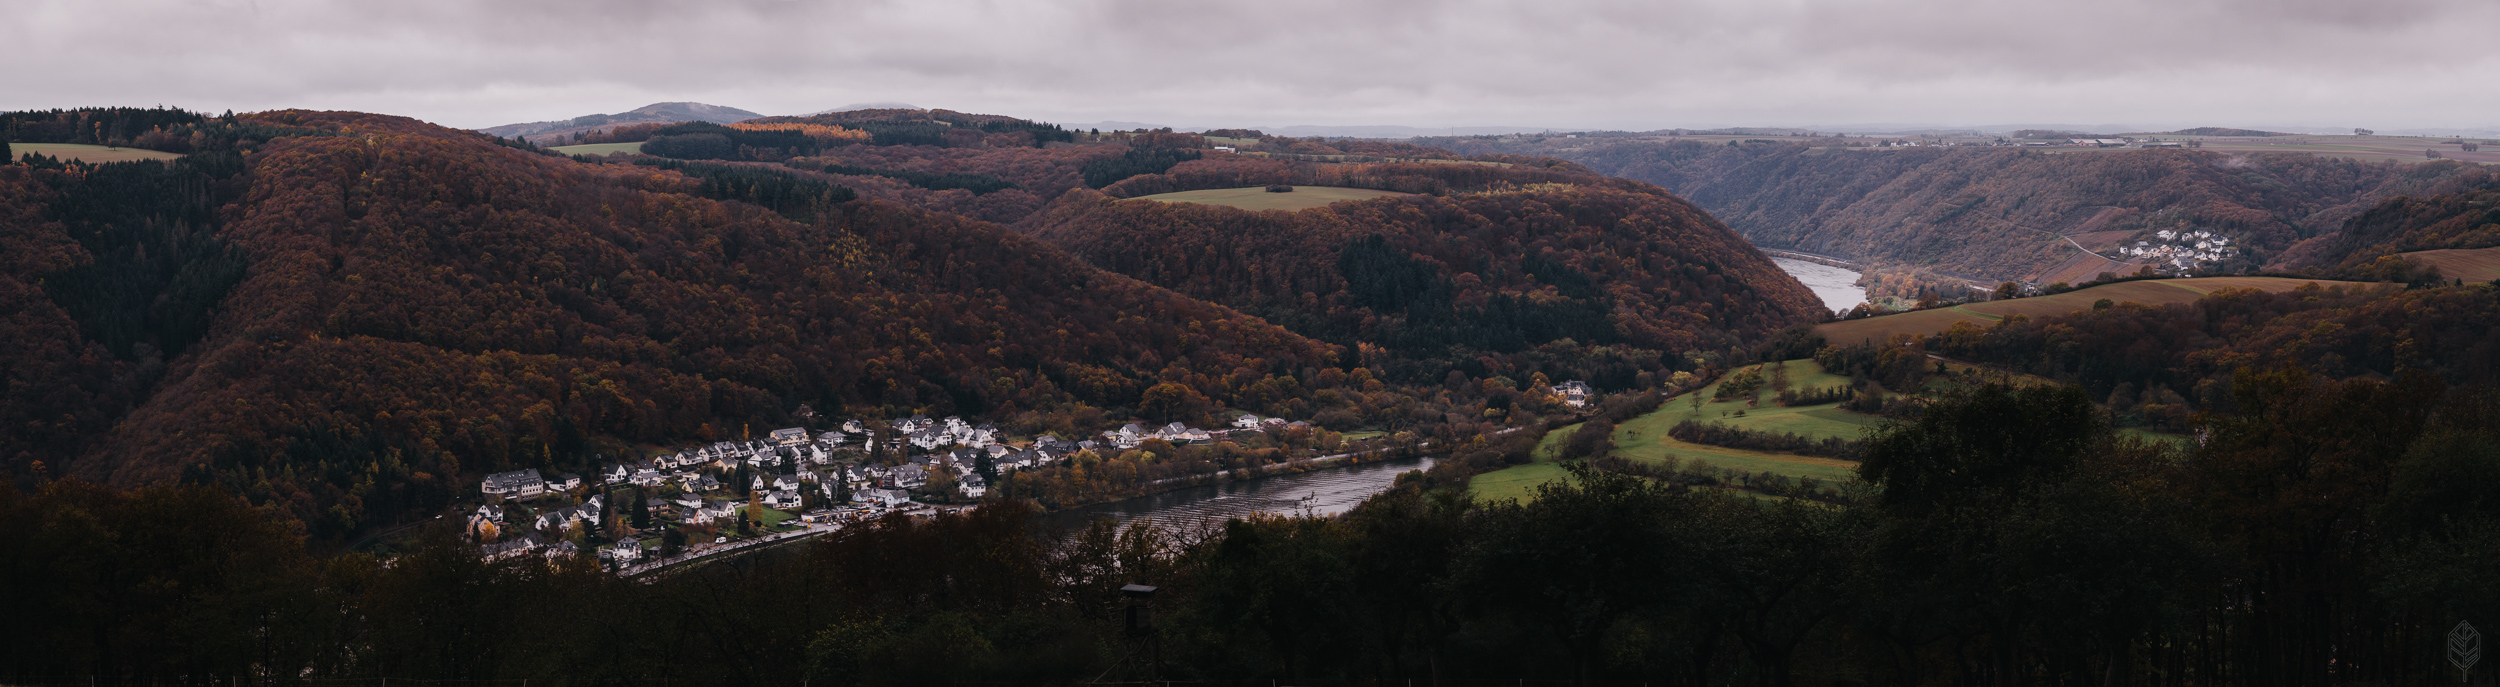 Moselle overlook